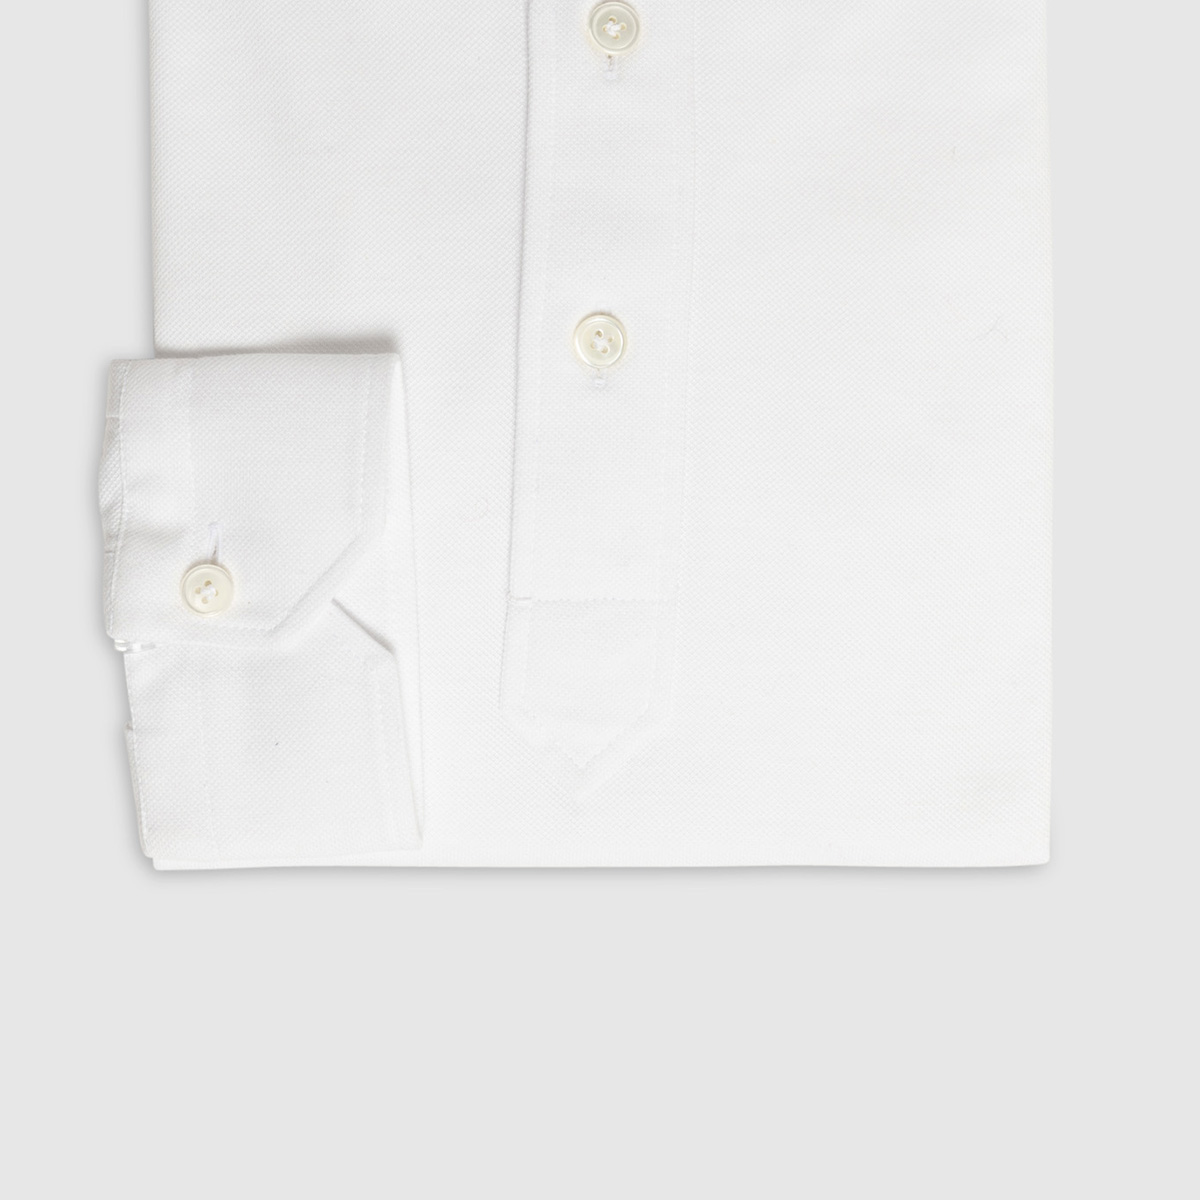 JFK Polo Shirt in White Piquet Cotton G. Inglese on sale 2022 2